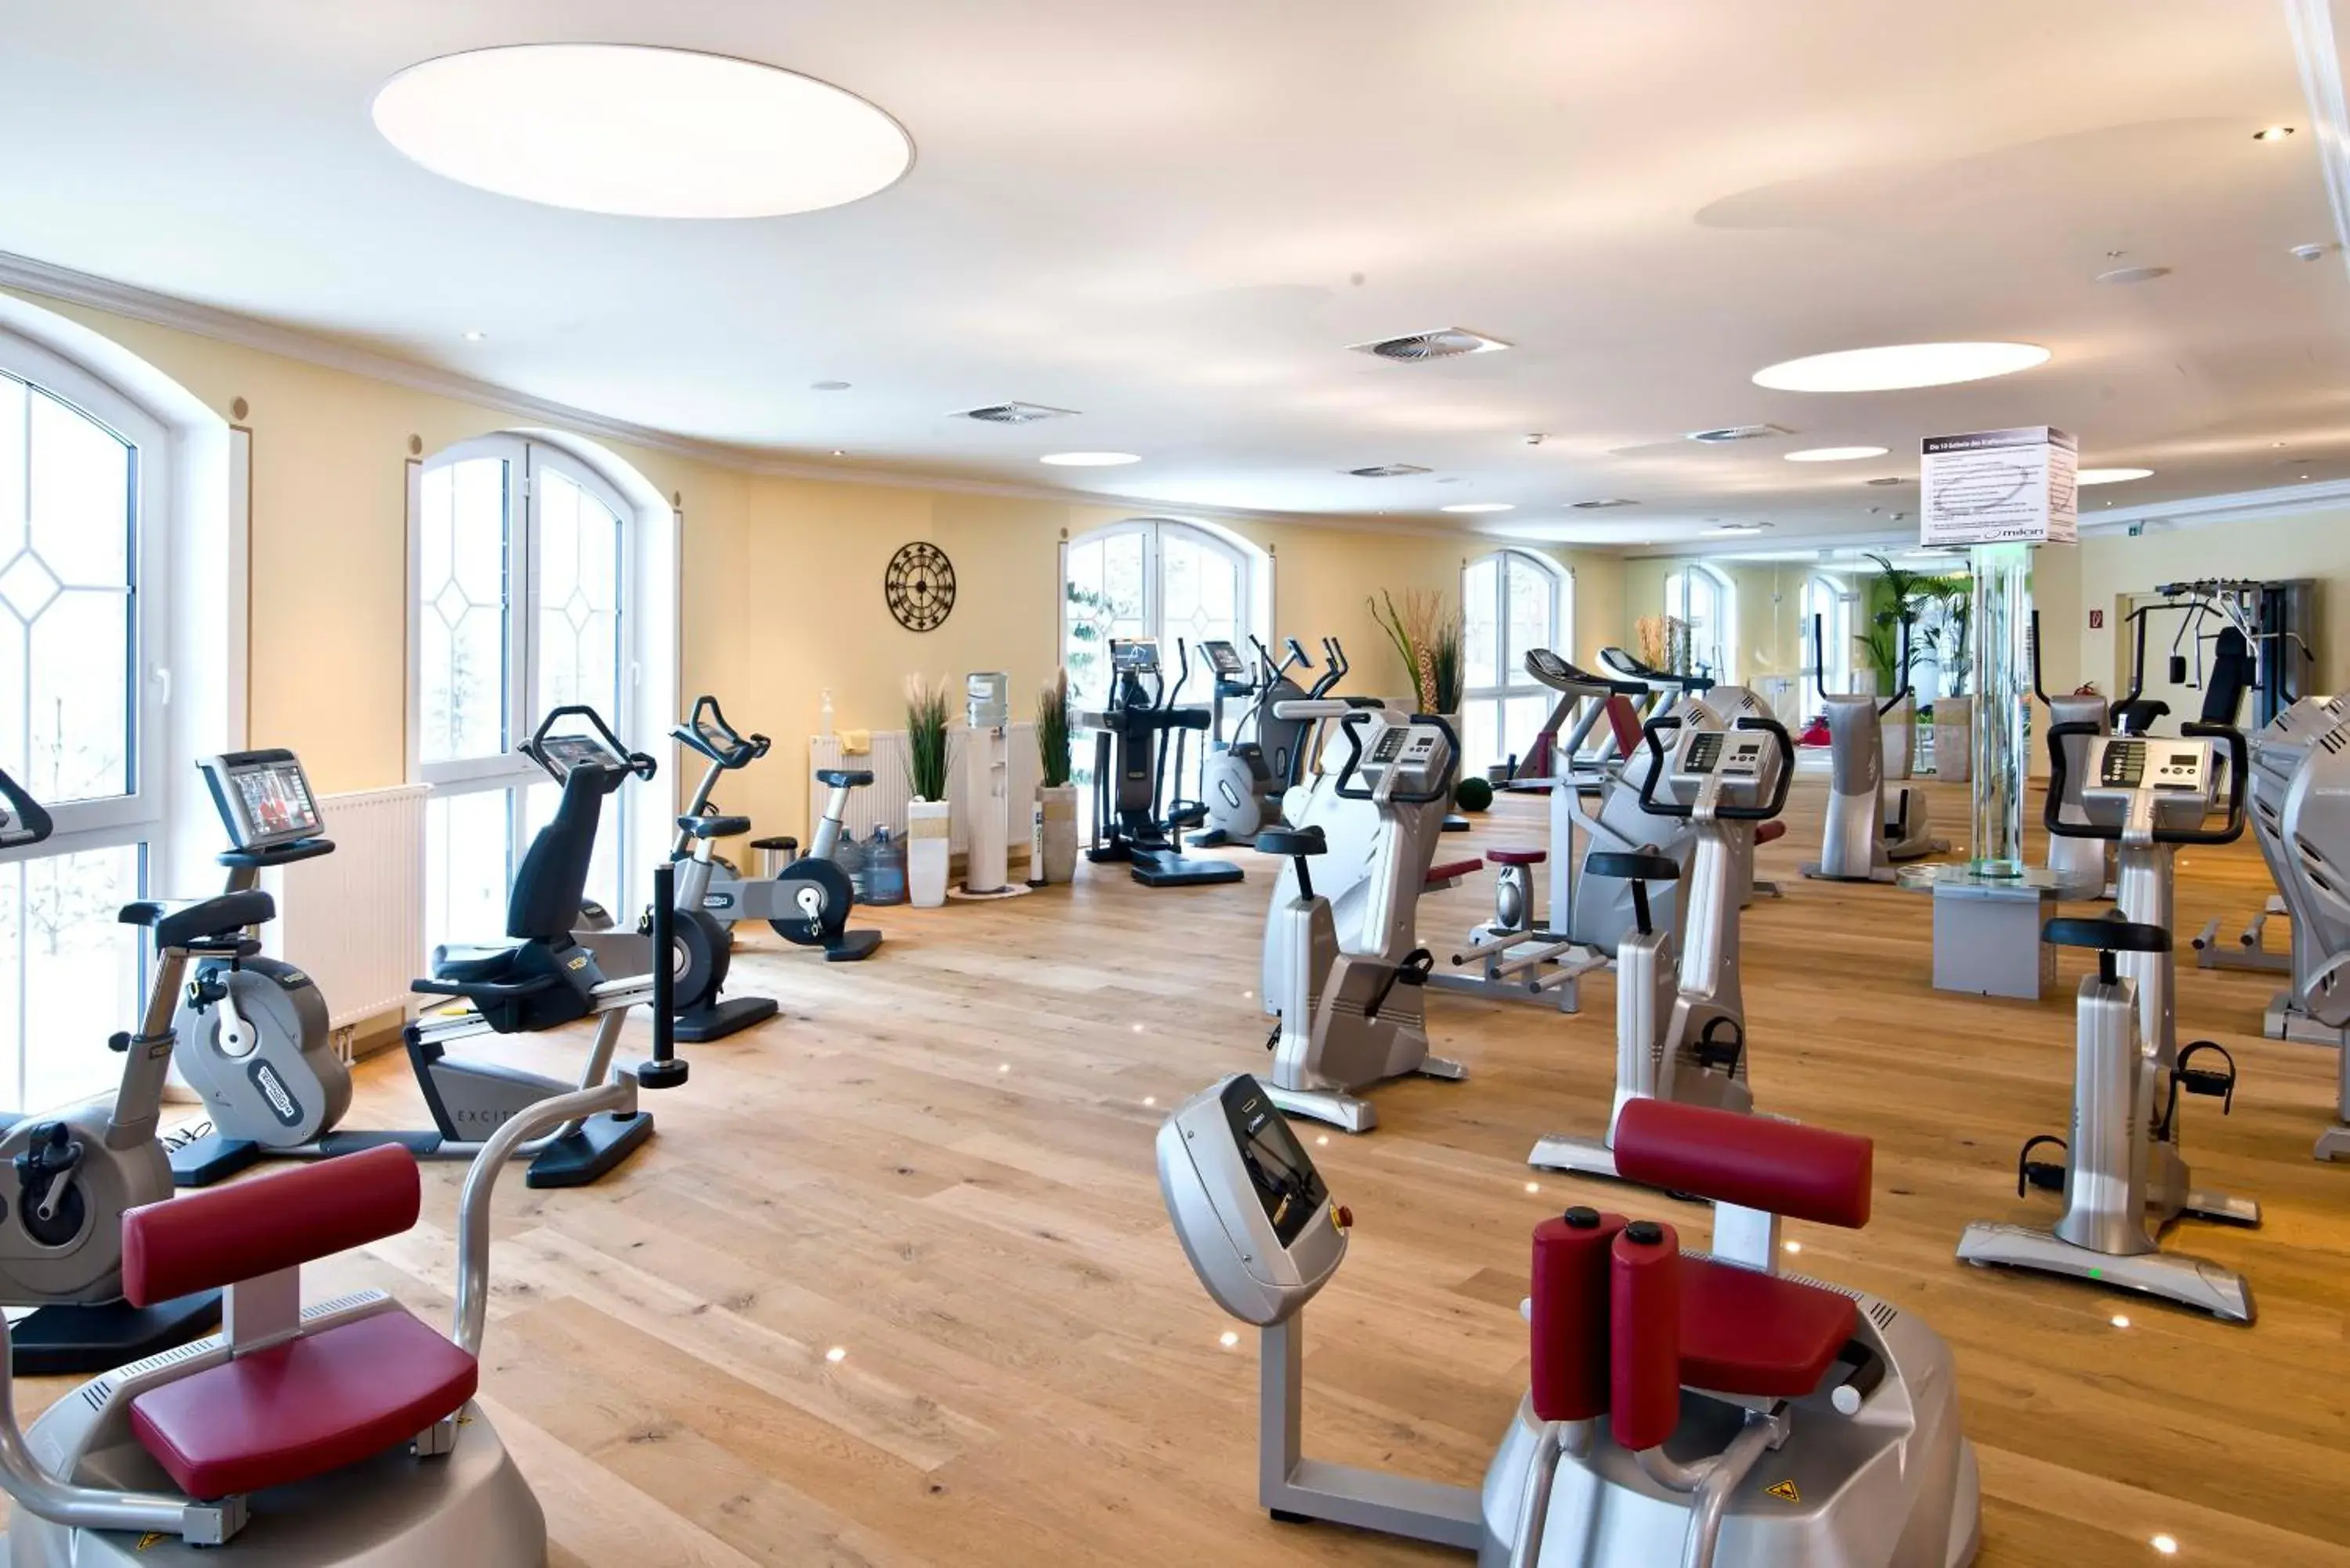 Fitness centre/facilities, Fitness Center/Facilities in Der Lärchenhof